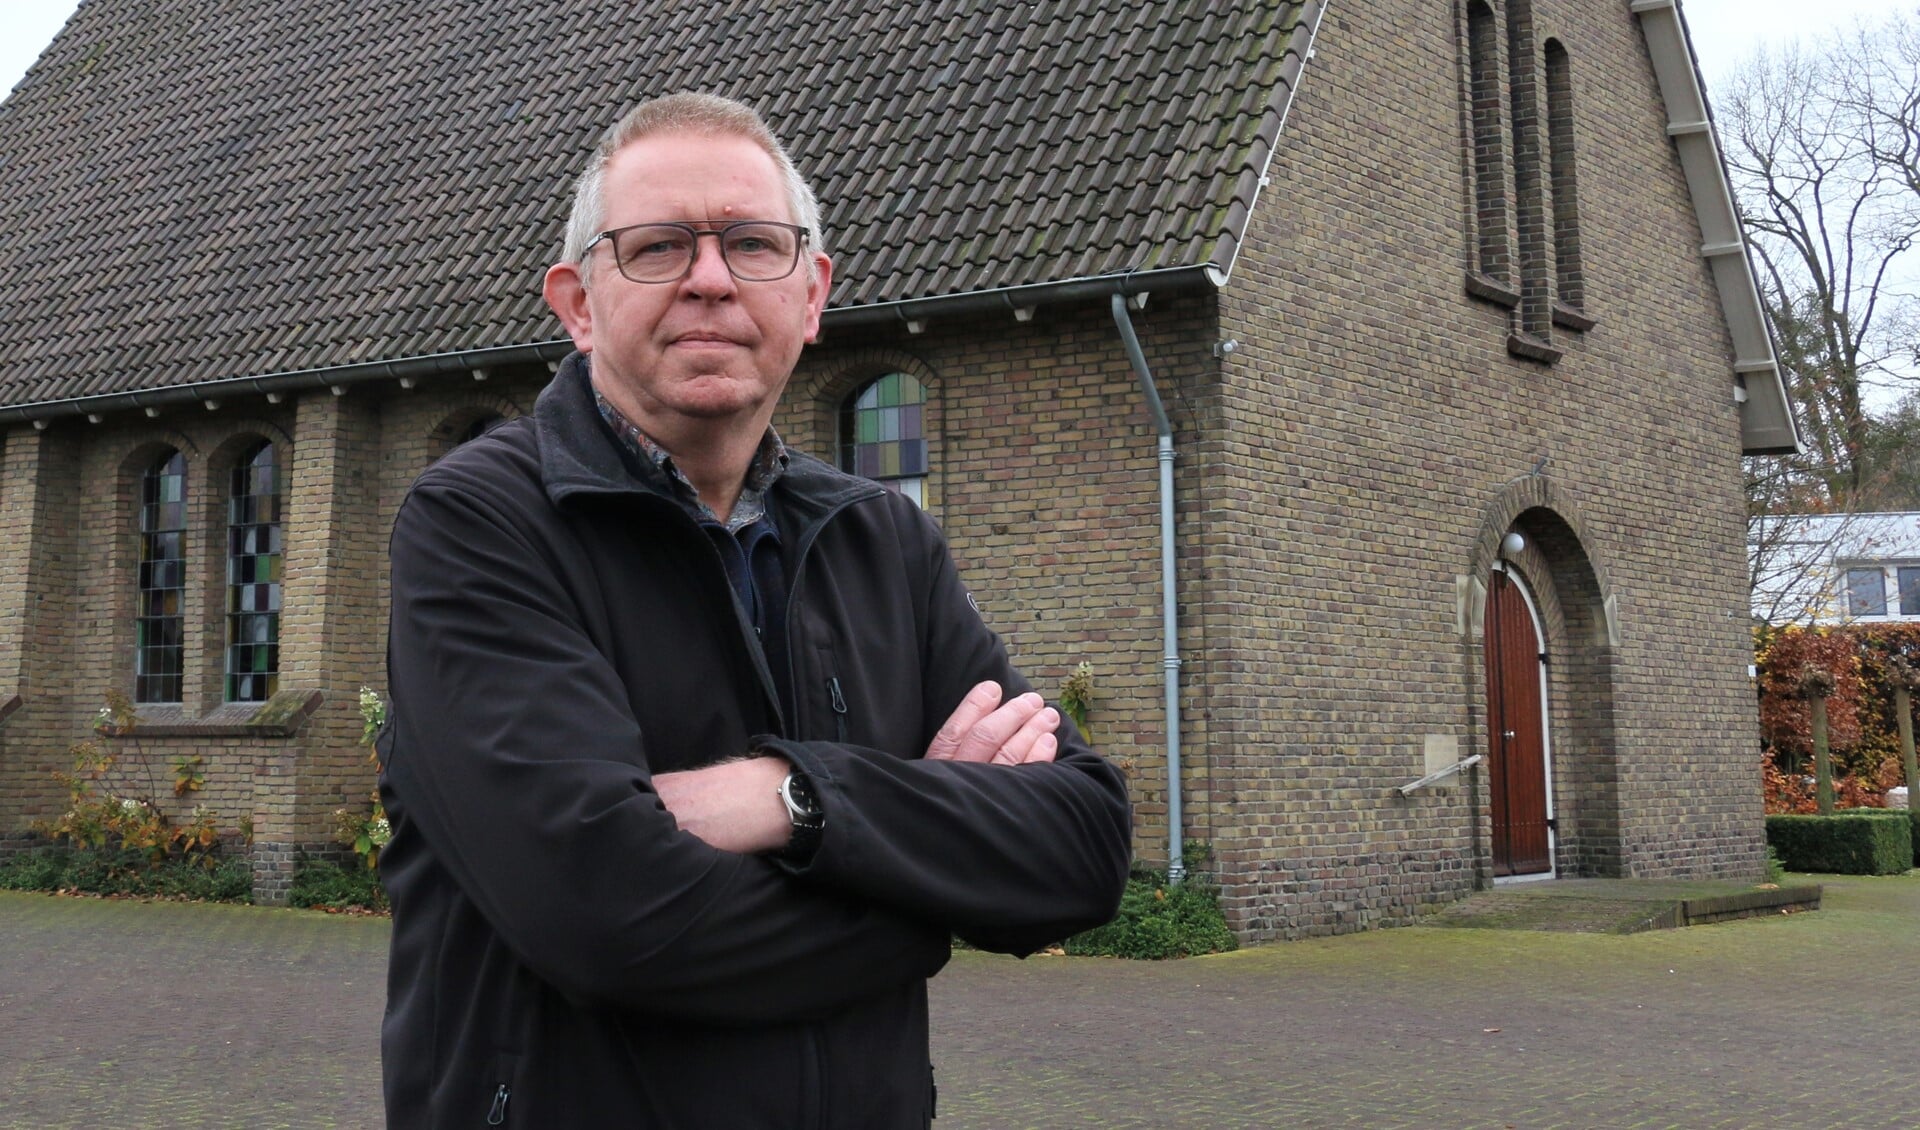 Wuf Bouw bij het eigen kerkgebouw aan de Veluweweg in Kootwijkerbroek.